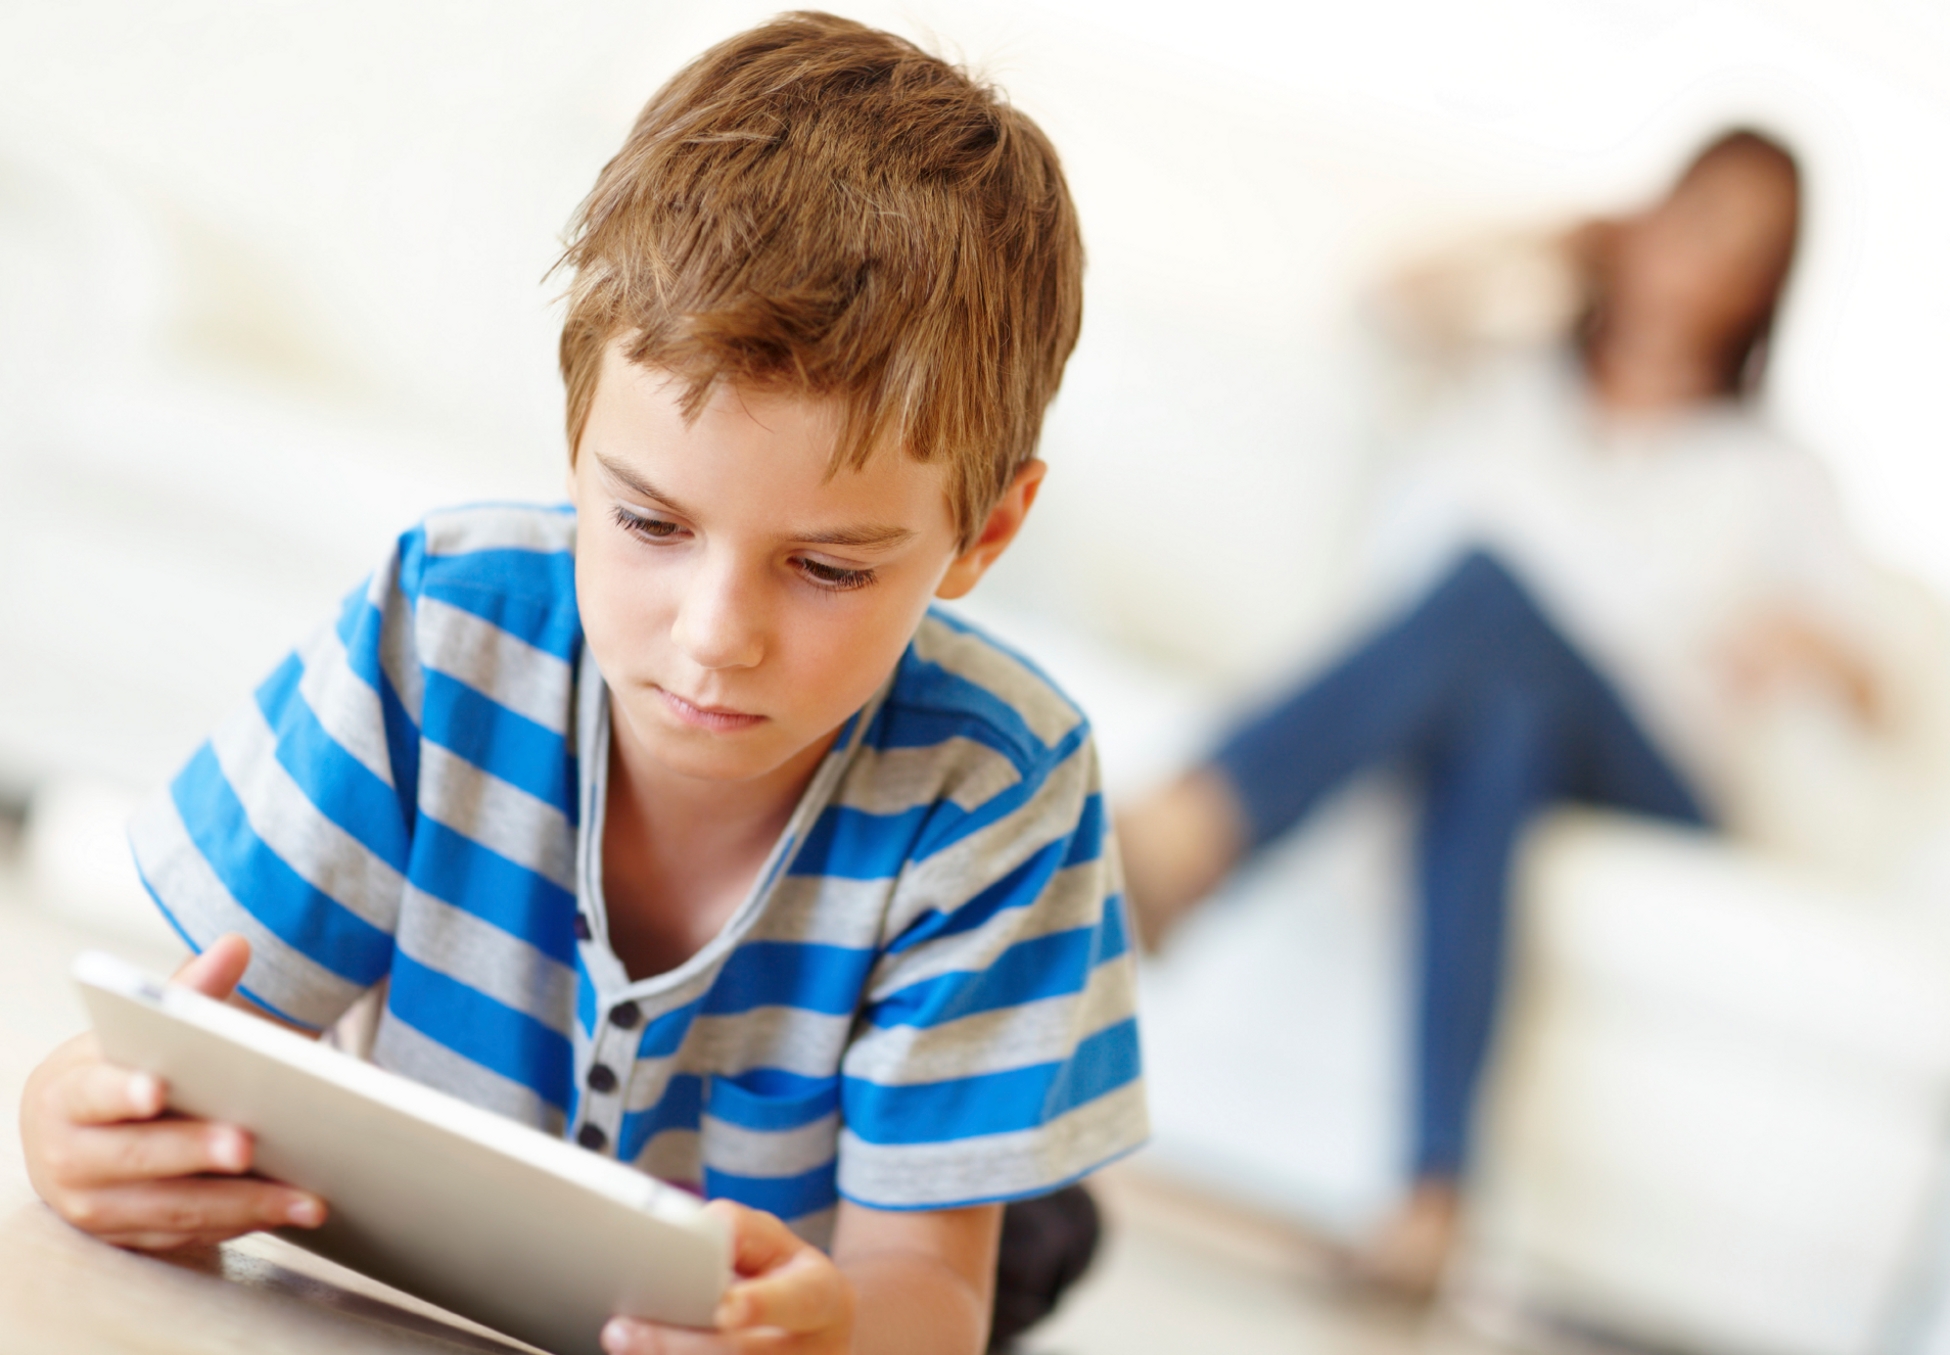 کودکان مجاز به چه میزان استفاده از تبلت و تلفن هوشمند هستند؟ 